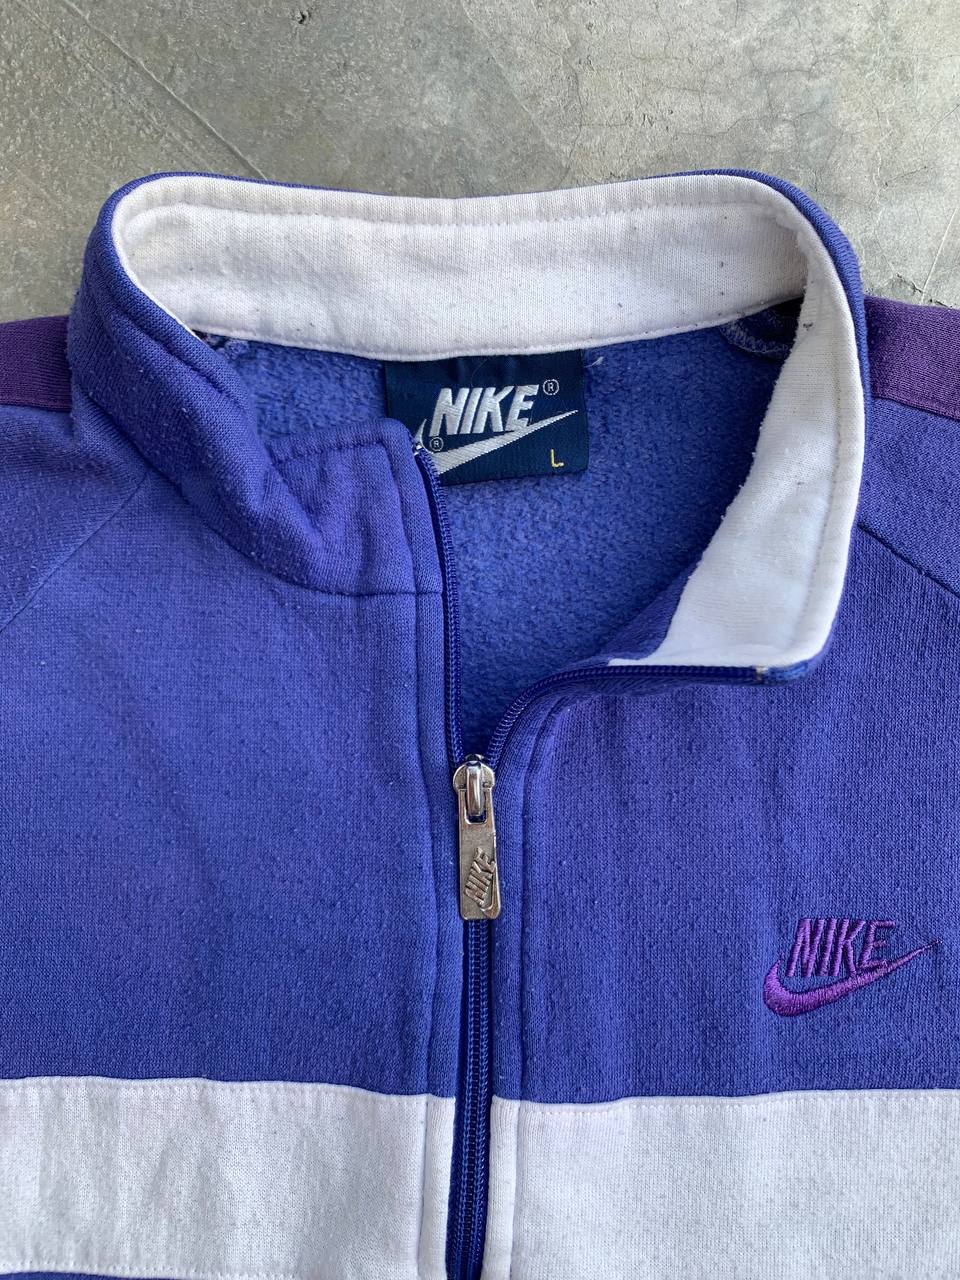 Vintage Nike Colorblock Zip Up Sweatshirt - 5